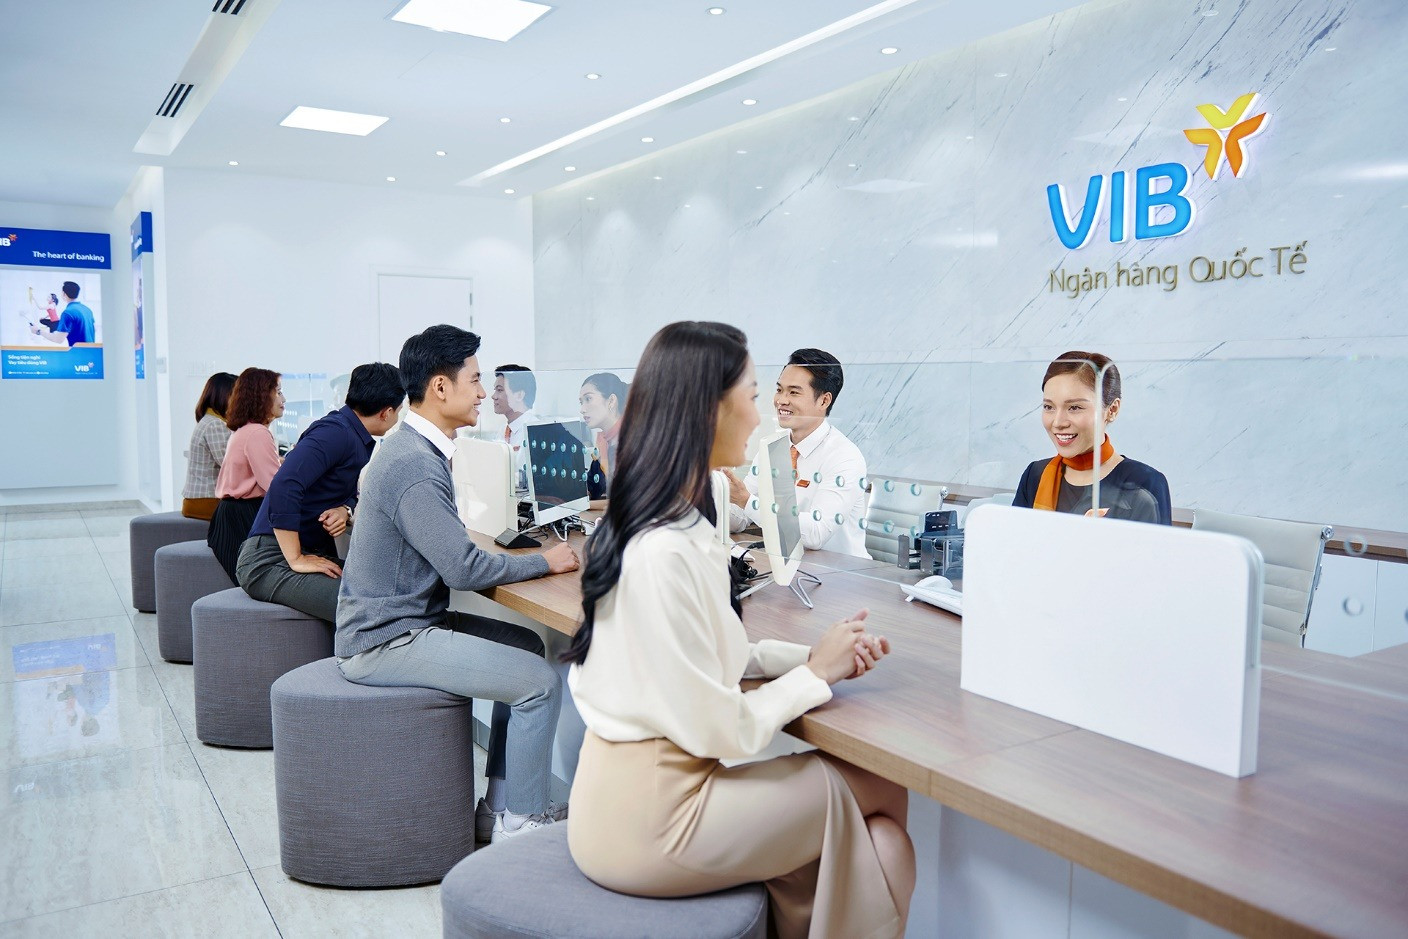 VIB áp dụng hạn mức bán ngoại tệ đến 70.000 USD cho khách hàng cá nhân